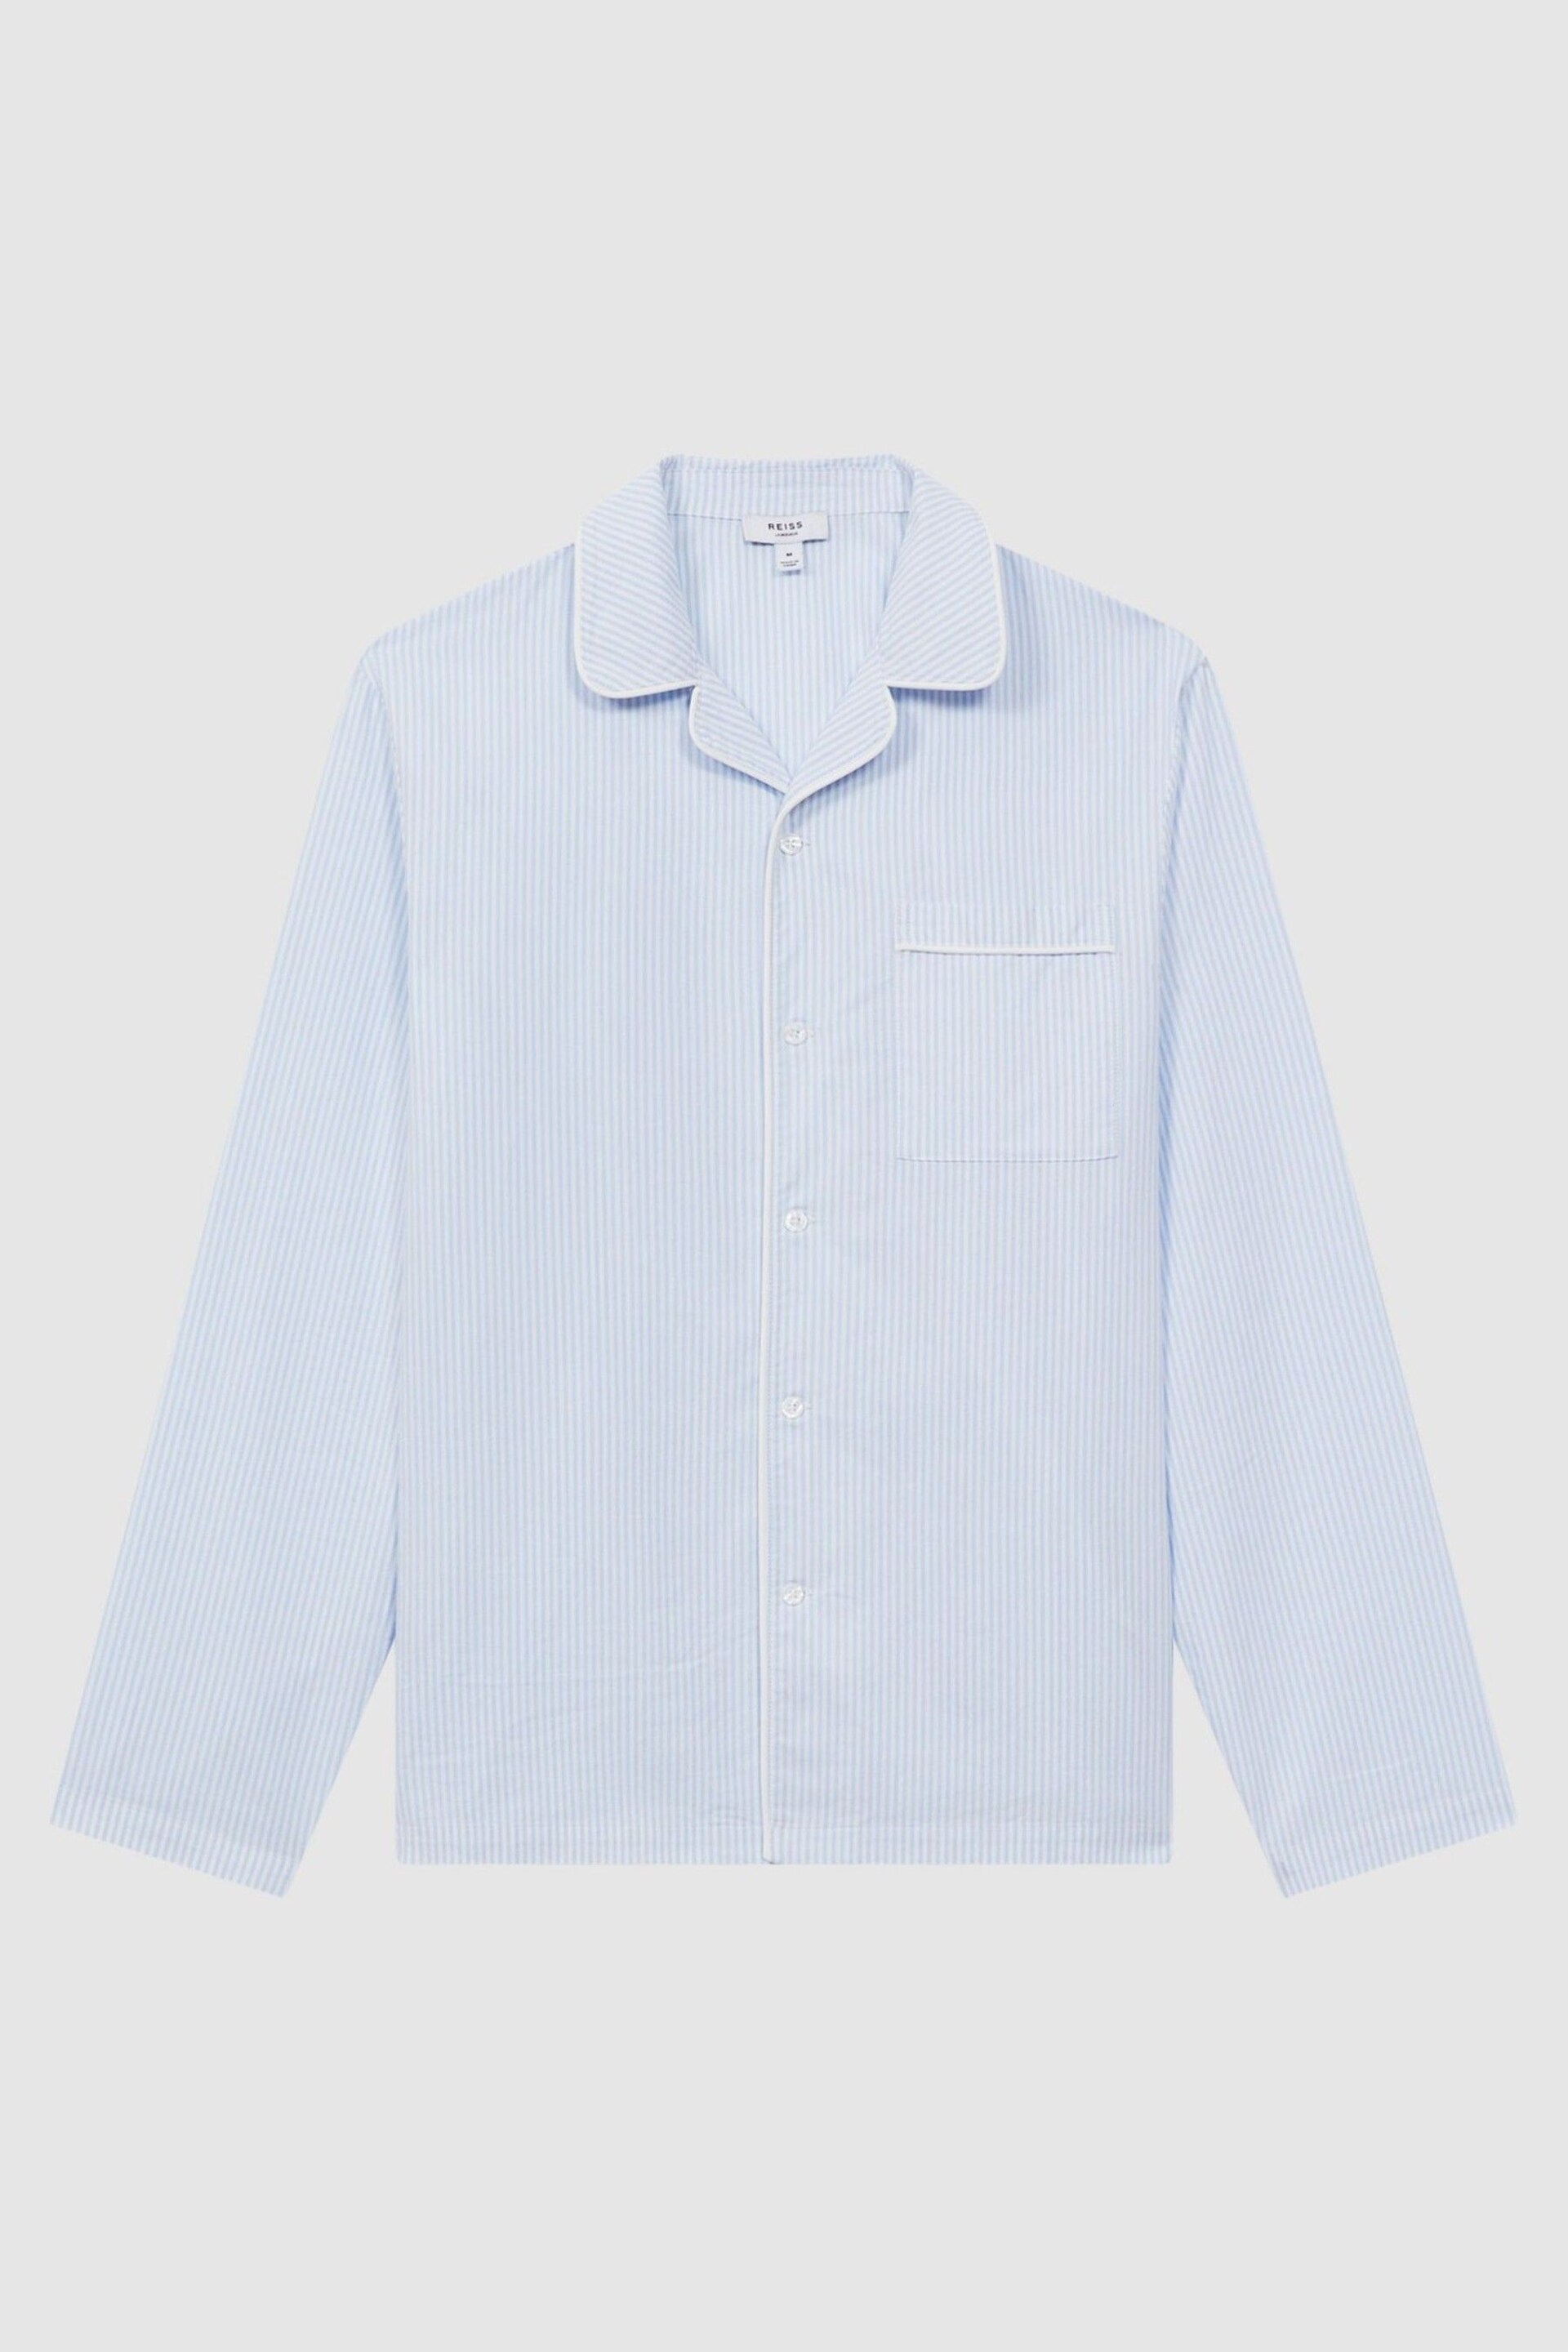 Reiss Blue/White Westley Striped Cotton Button-Through Pyjama Shirt - Image 2 of 5